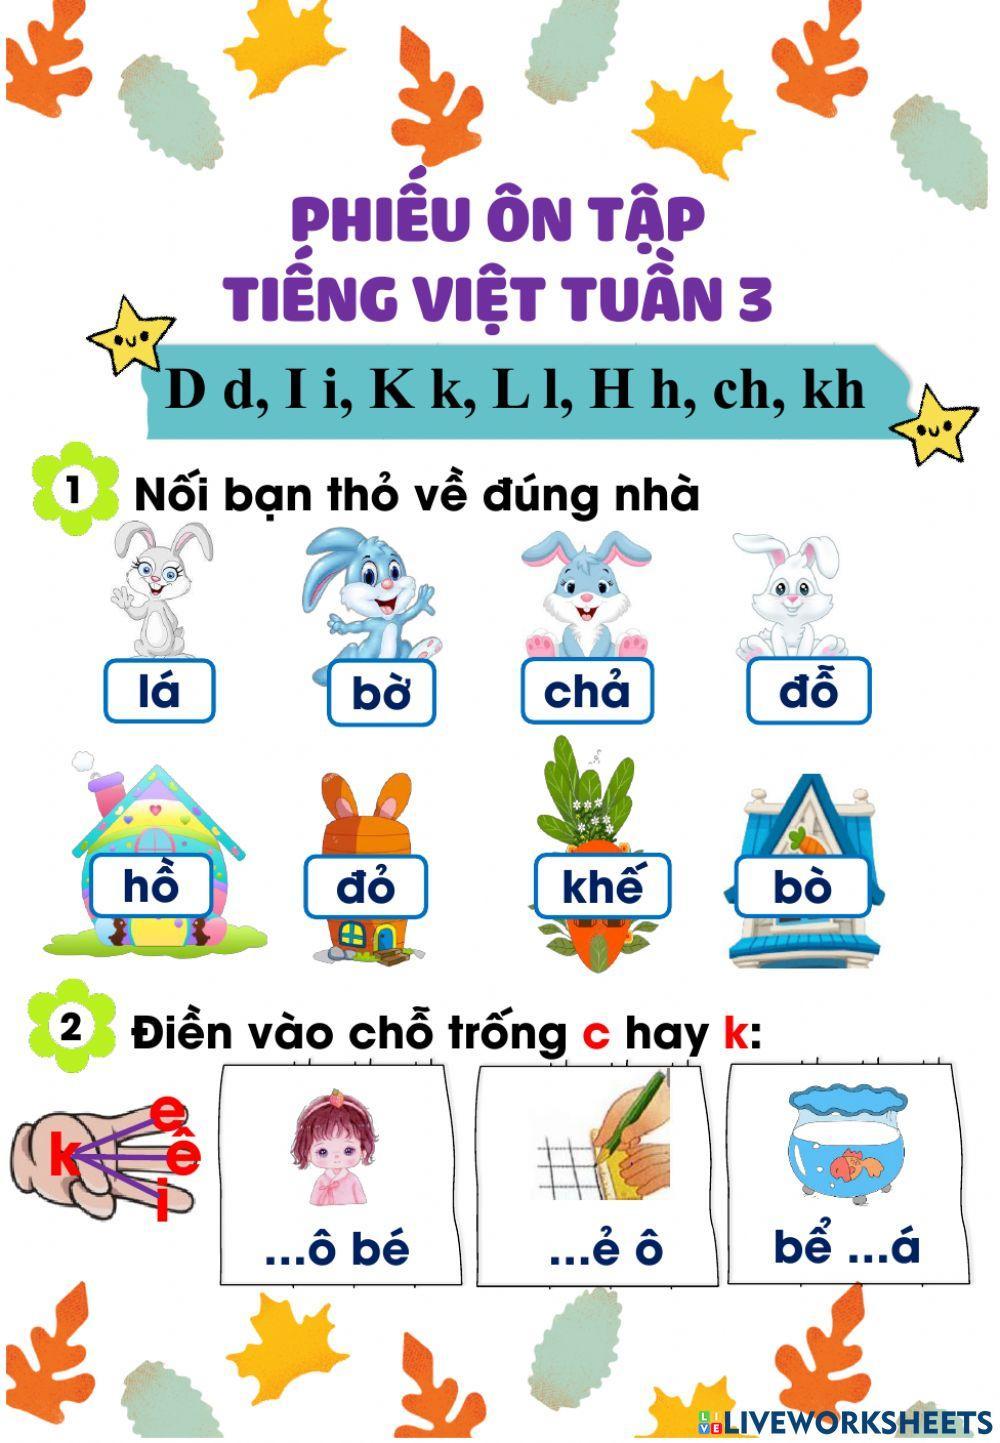 Phiếu ôn tập Tiếng Việt tuần 3